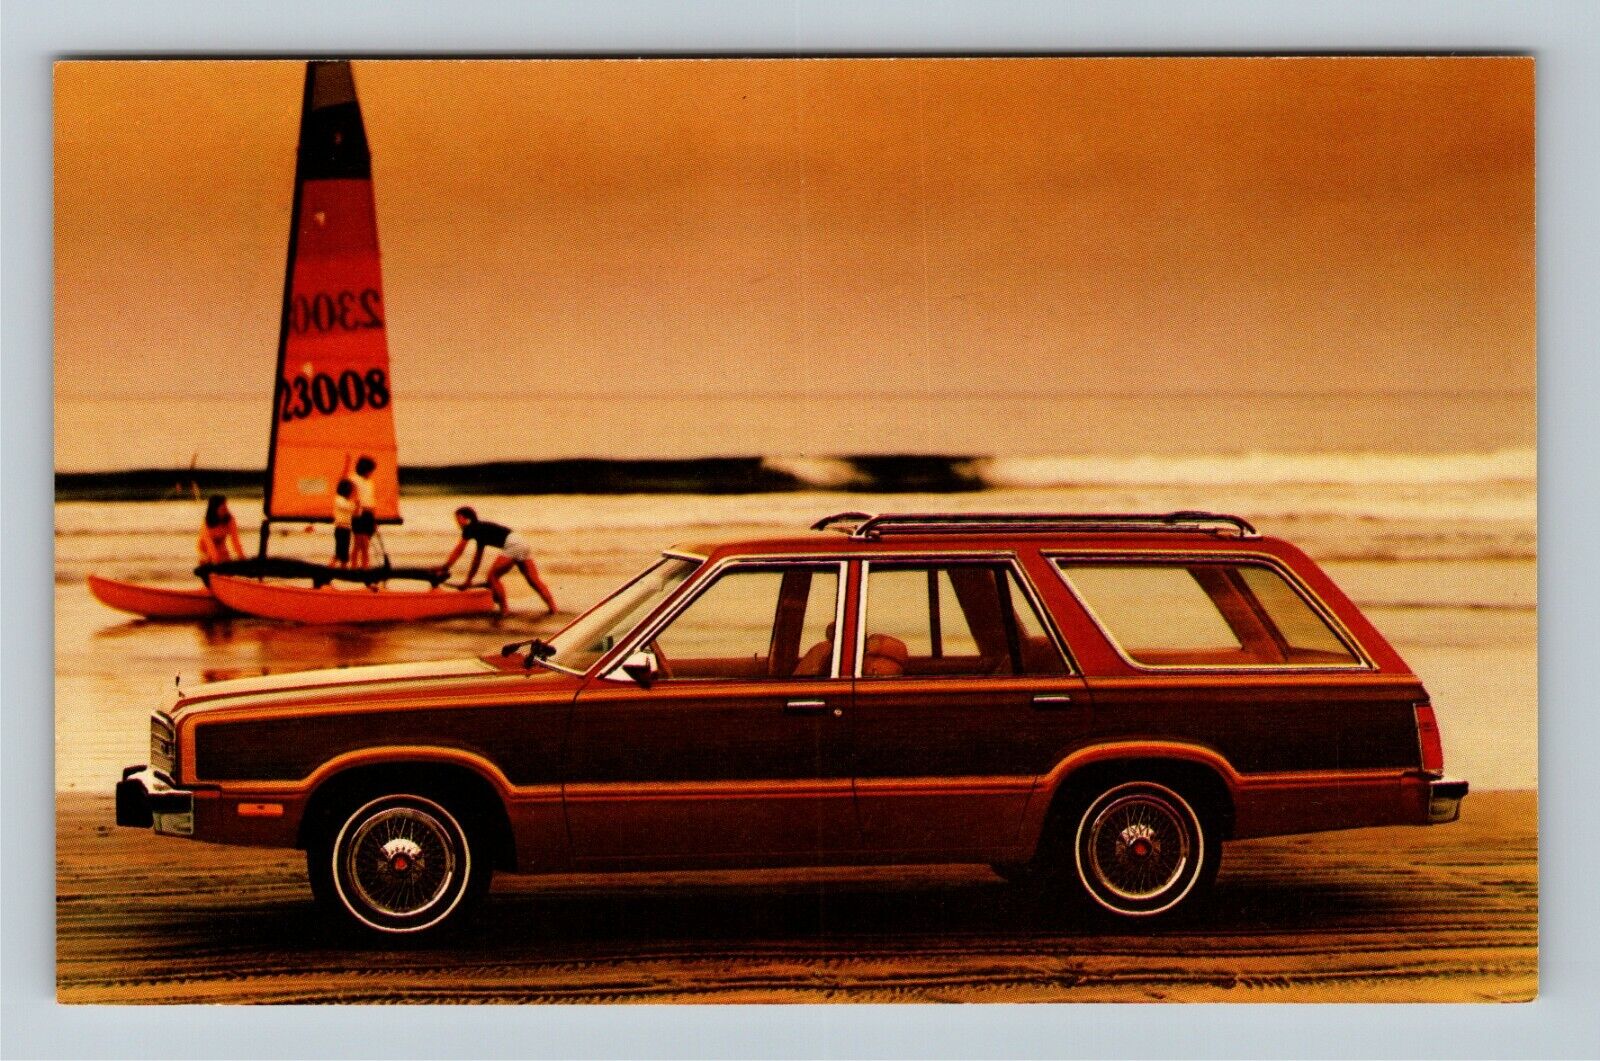 1979 Fairmont Squire Automobile Vintage Postcard